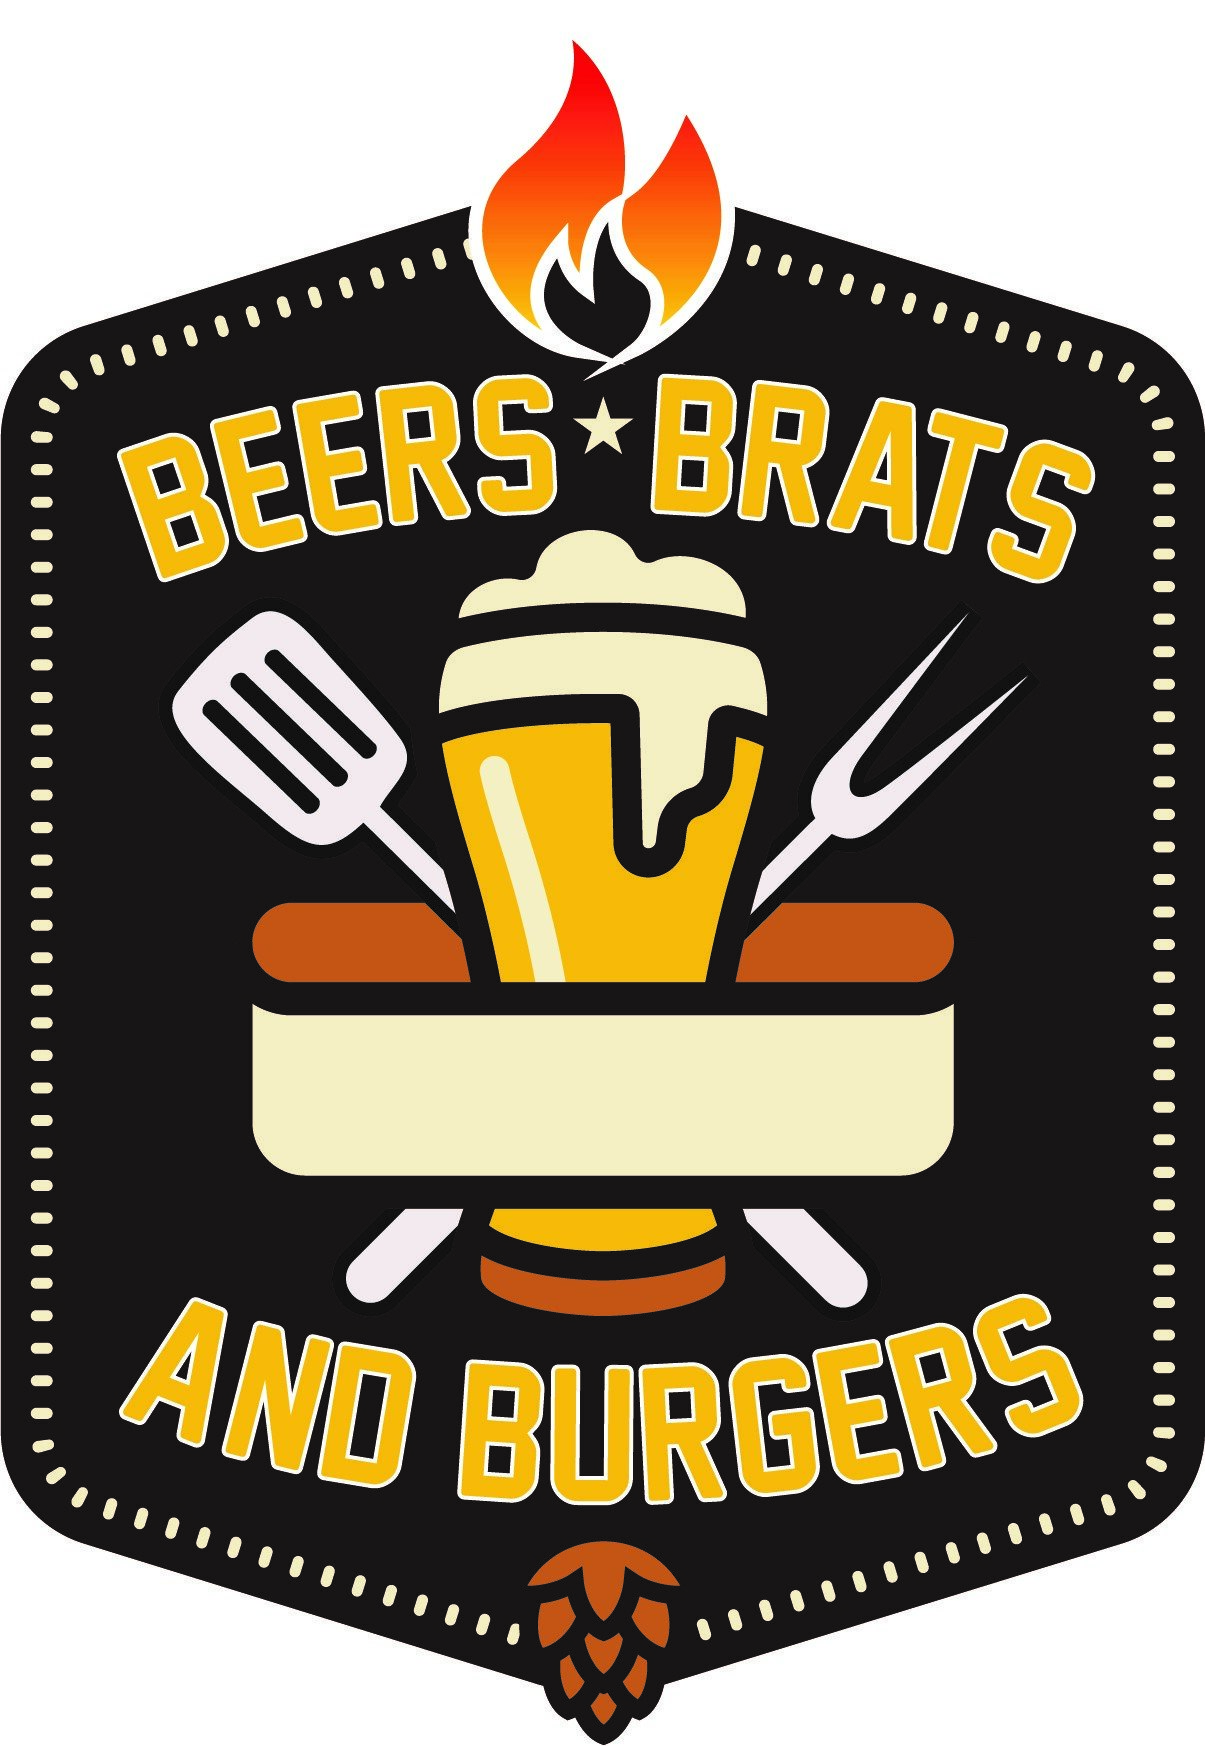 Beers, Brats & Burgers